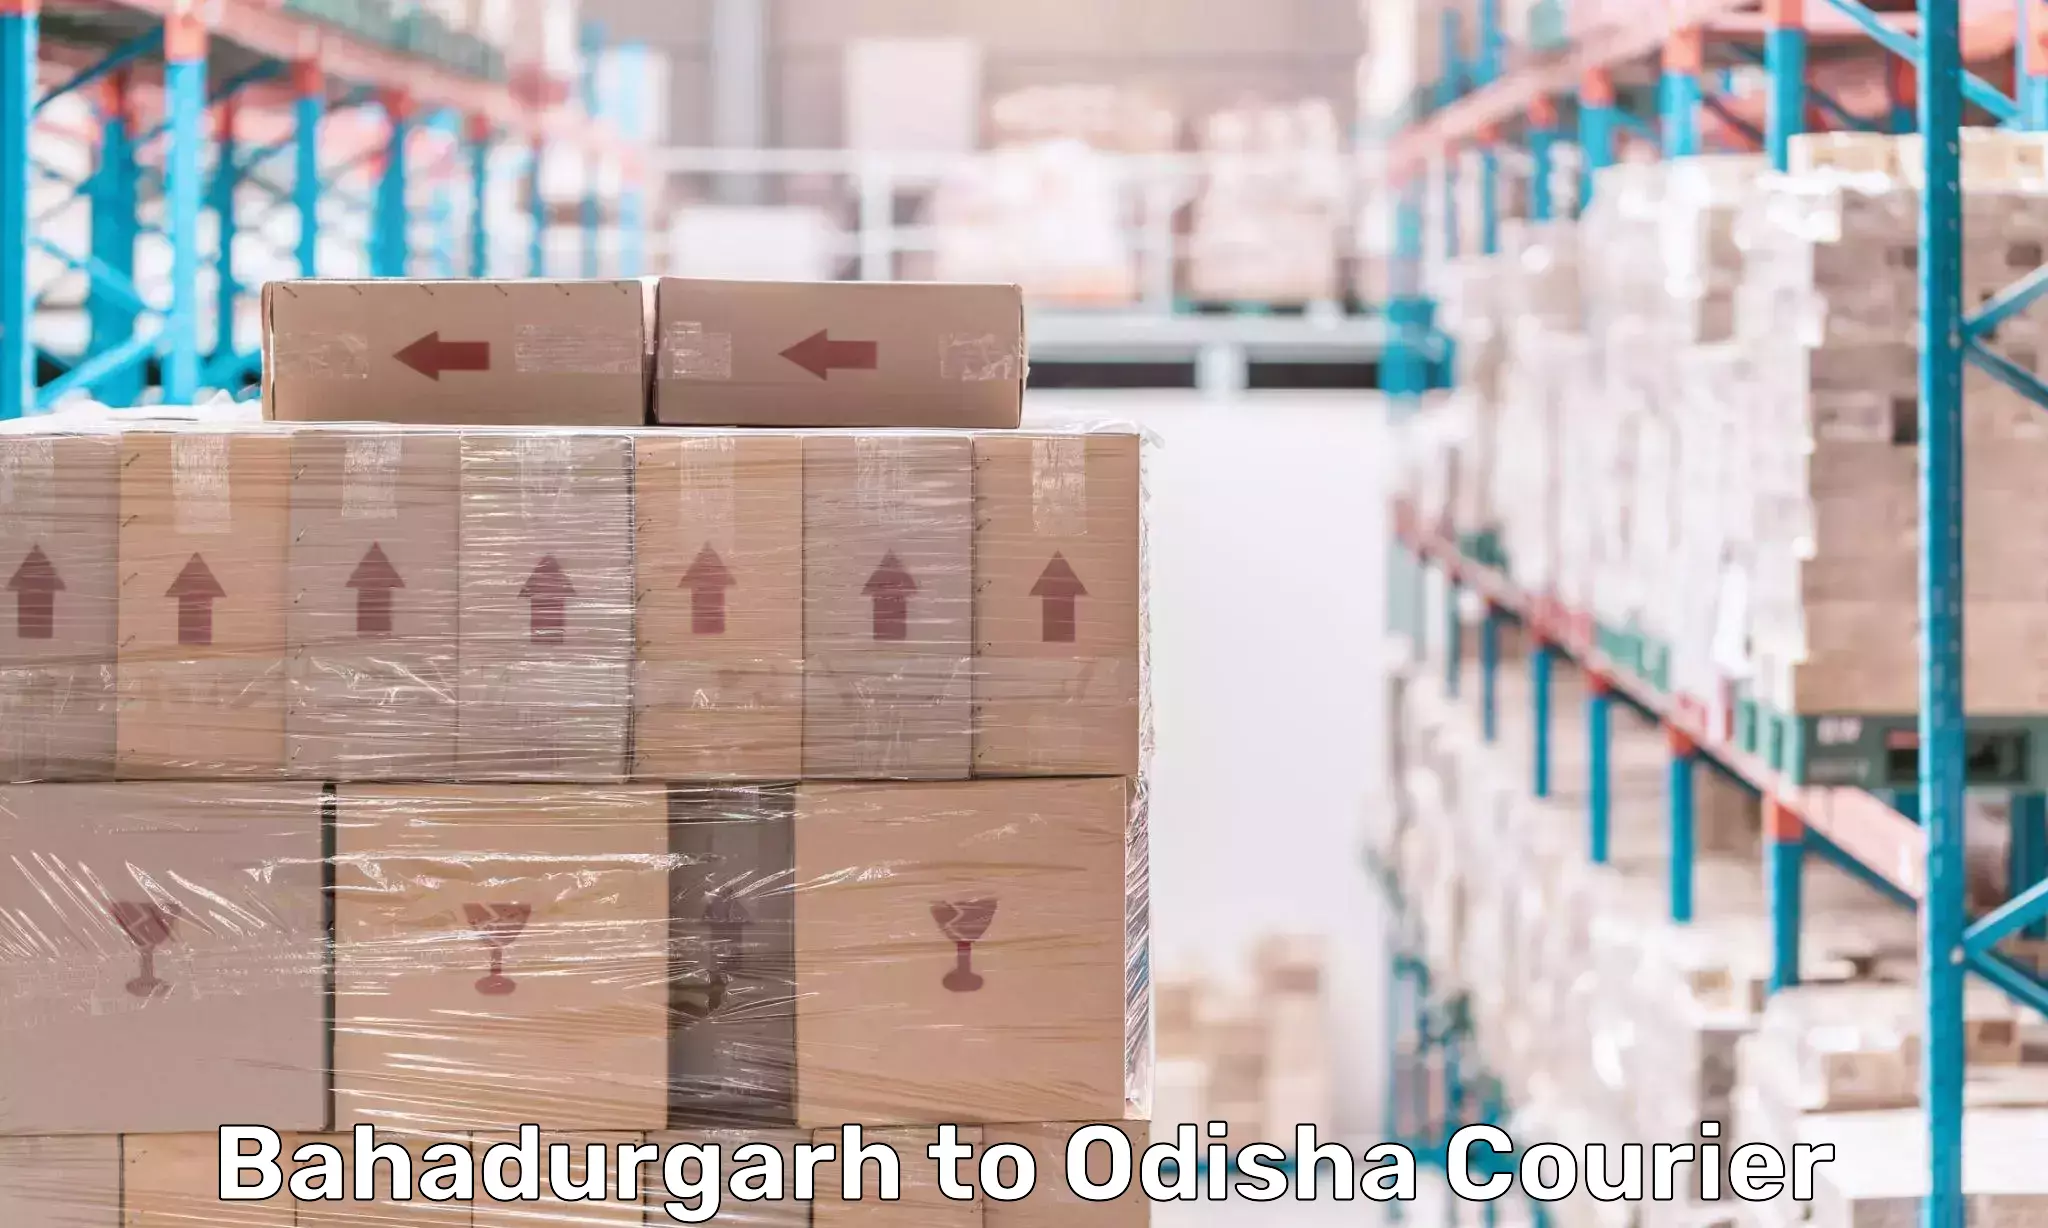 Comprehensive delivery network Bahadurgarh to Odisha